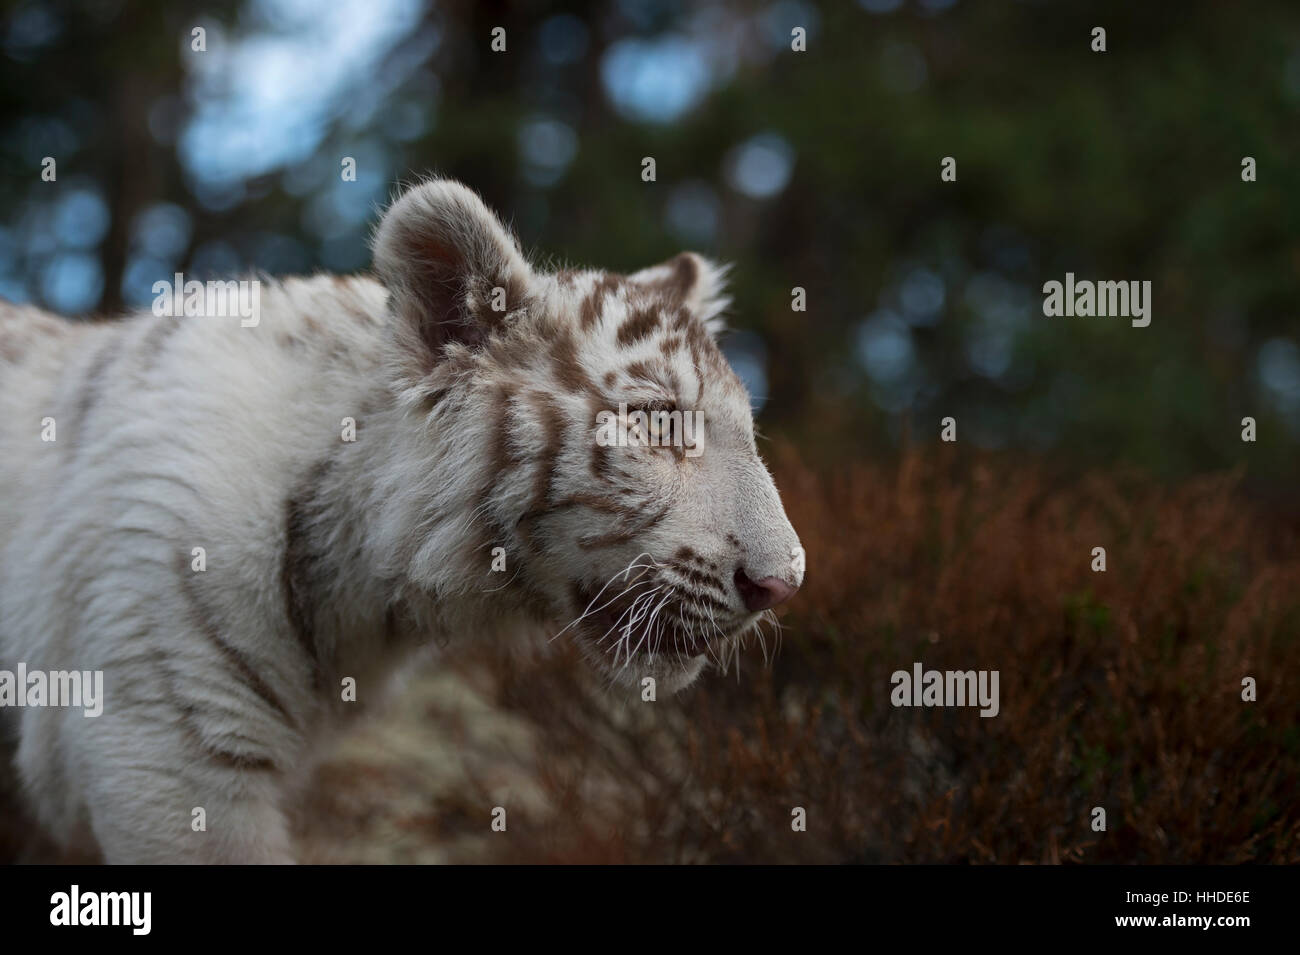 Royal tigre del Bengala / Koenigstiger ( Panthera tigris ), bianco morph, close-up, headshot, vista laterale dettagliata, gli occhi della tigre. Foto Stock